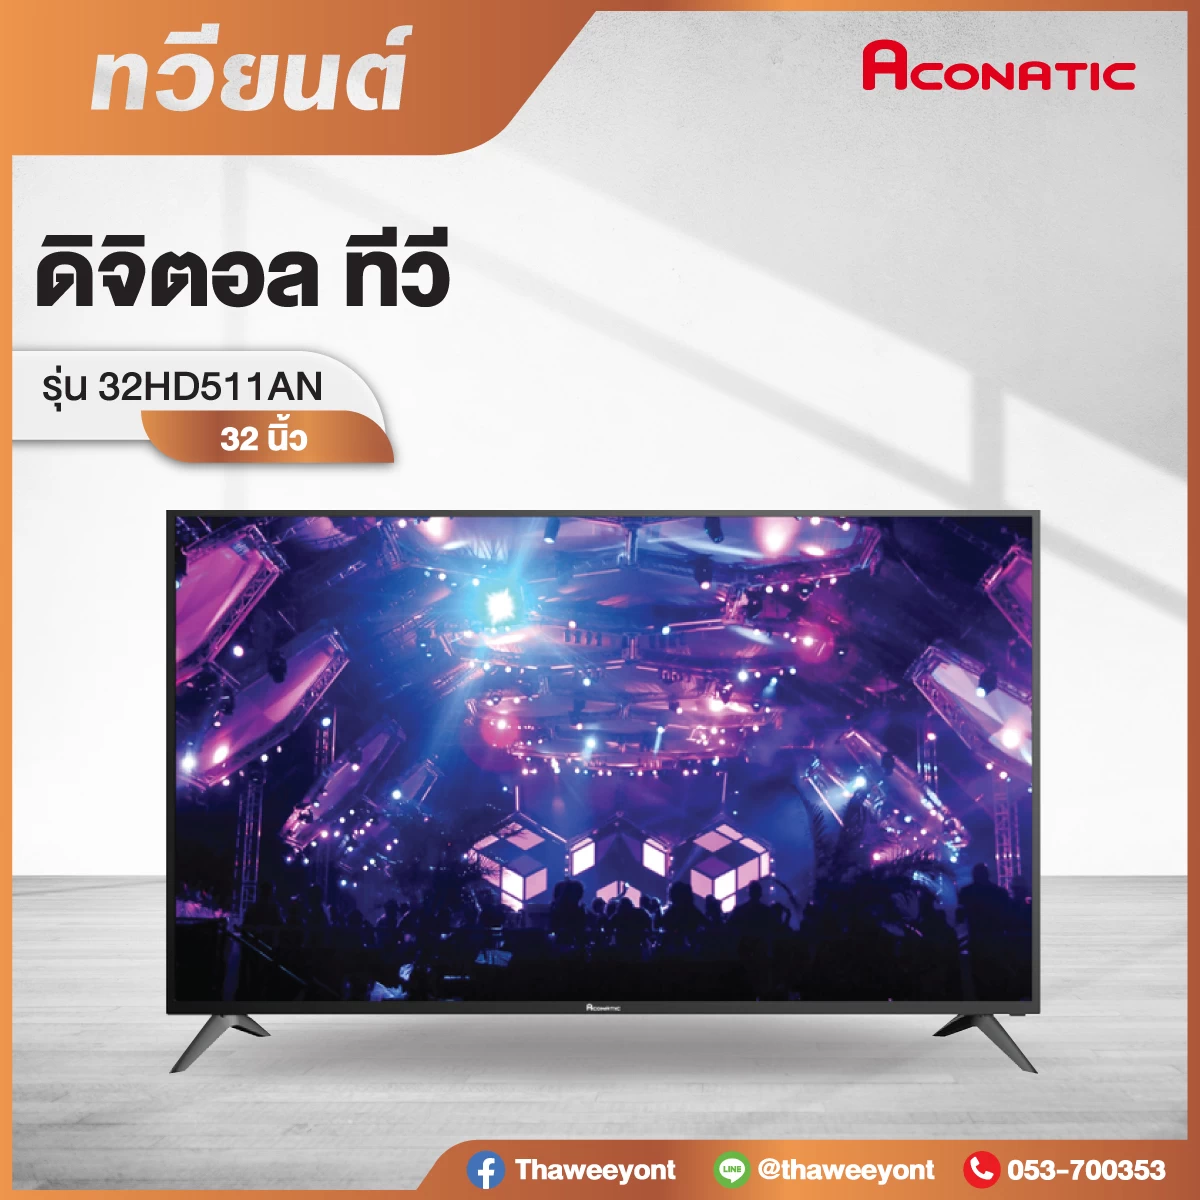 ACONATIC TV HD LED รุ่น 32HD511AN ขนาดหน้าจอ 32 นิ้ว ดิจิตอลทีวี